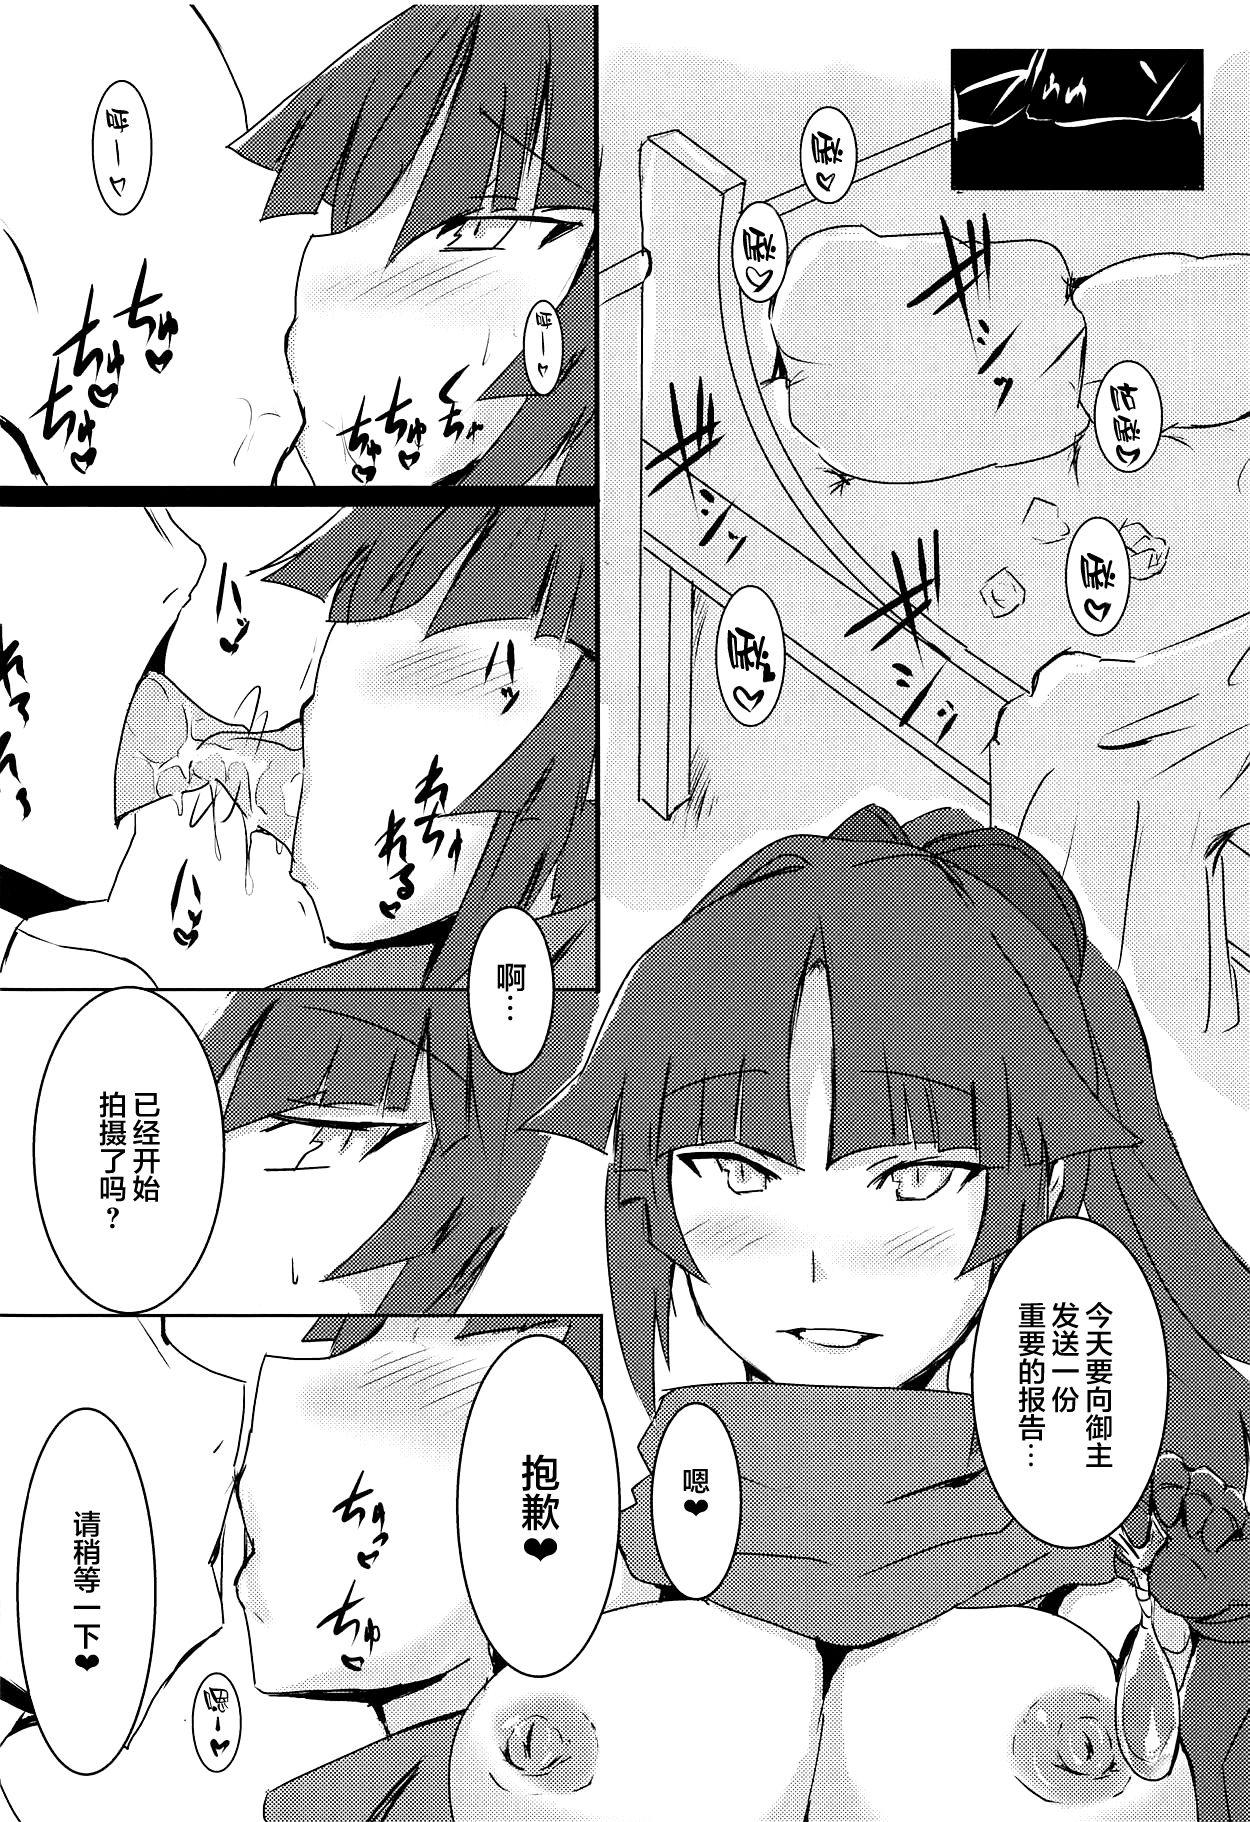 Licking Pussy Kizuna 10. ☆4 Saba Itadakimasu - Fate grand order Gorda - Page 4